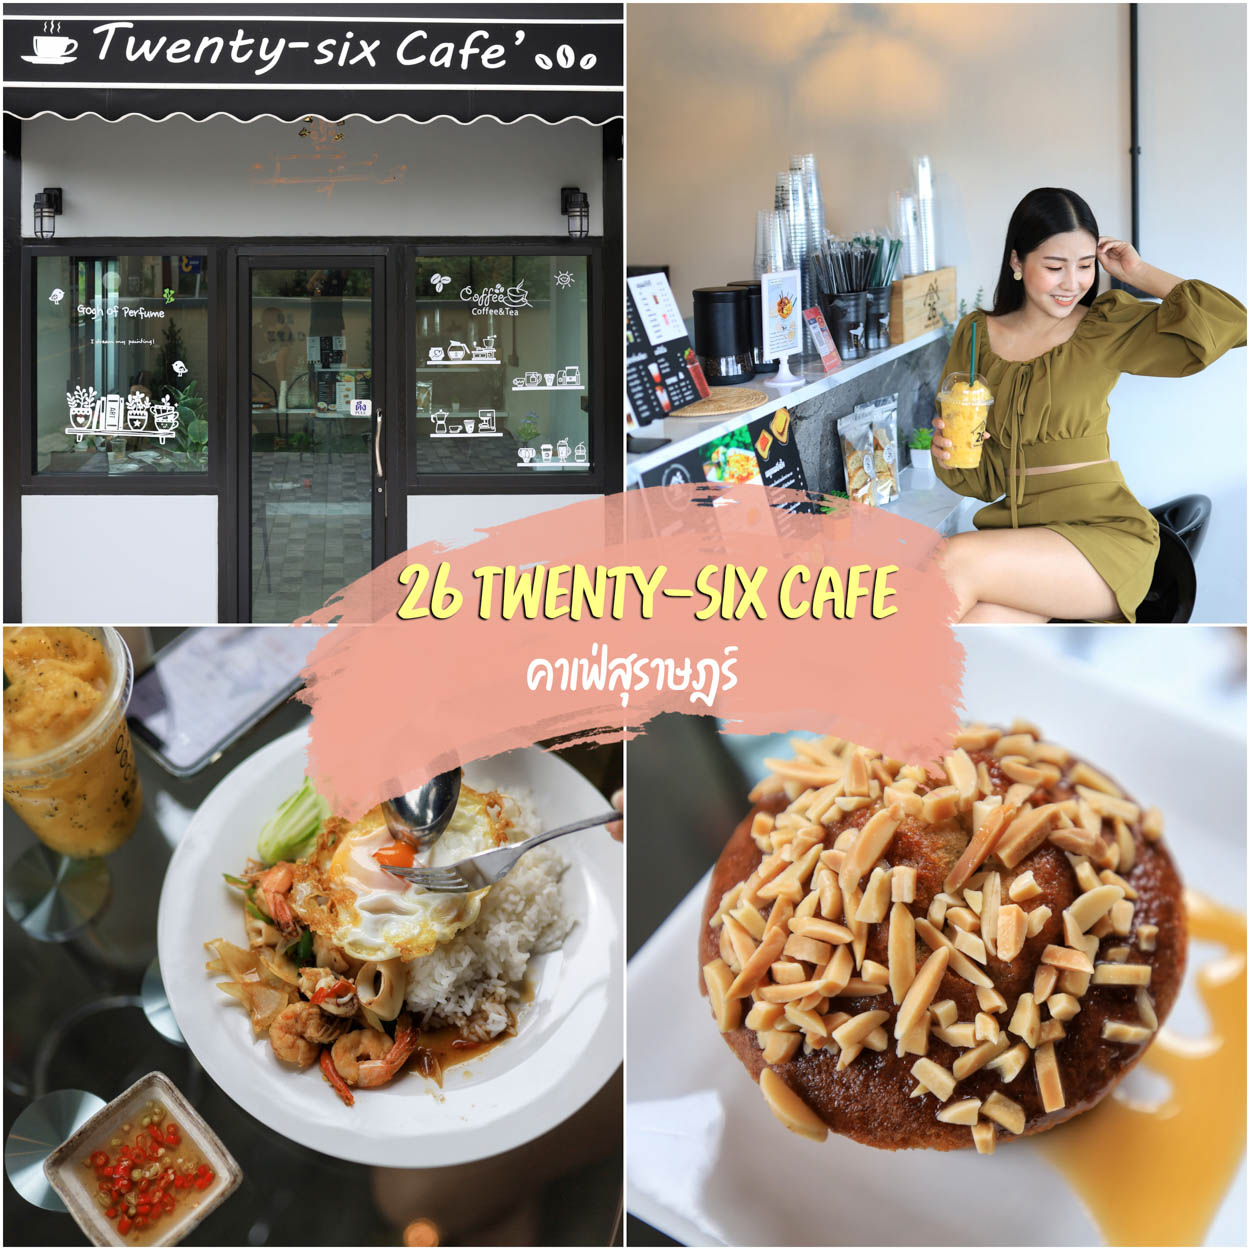 คาเฟ่เปิดใหม่ 26 Twenty-six cafe  สุราษฏร์ธานี คาเฟ่คุมโทนอบอุ่นดั่งนั่งจิบกาแฟชิวๆเหมือนอยู่บ้าน